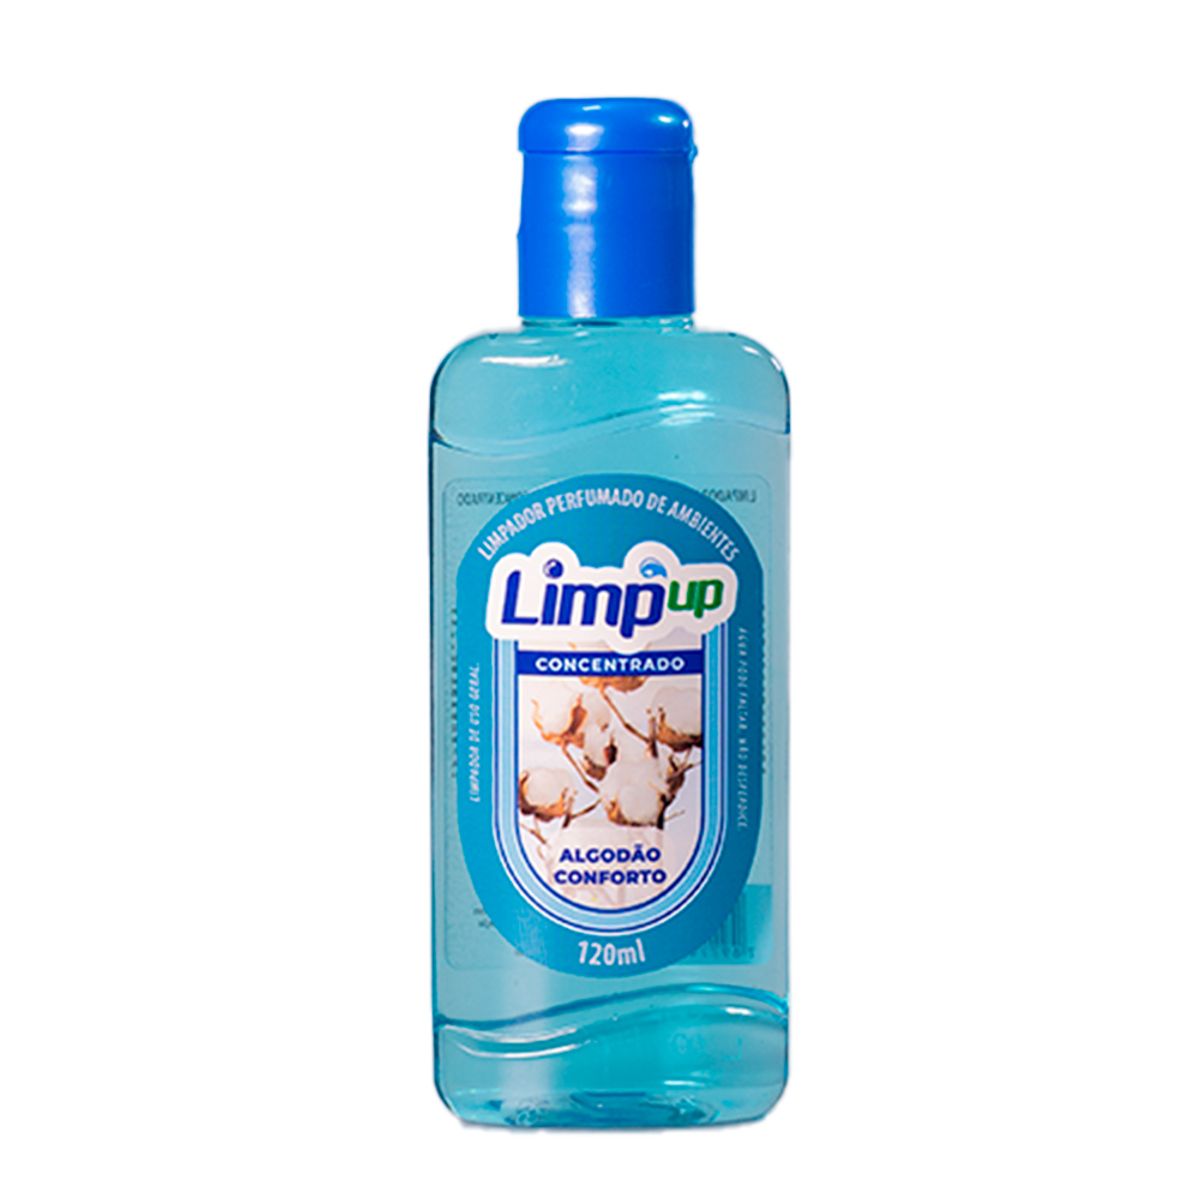 Limpador Perfumado Limp Up Algodão Conforto 120ml